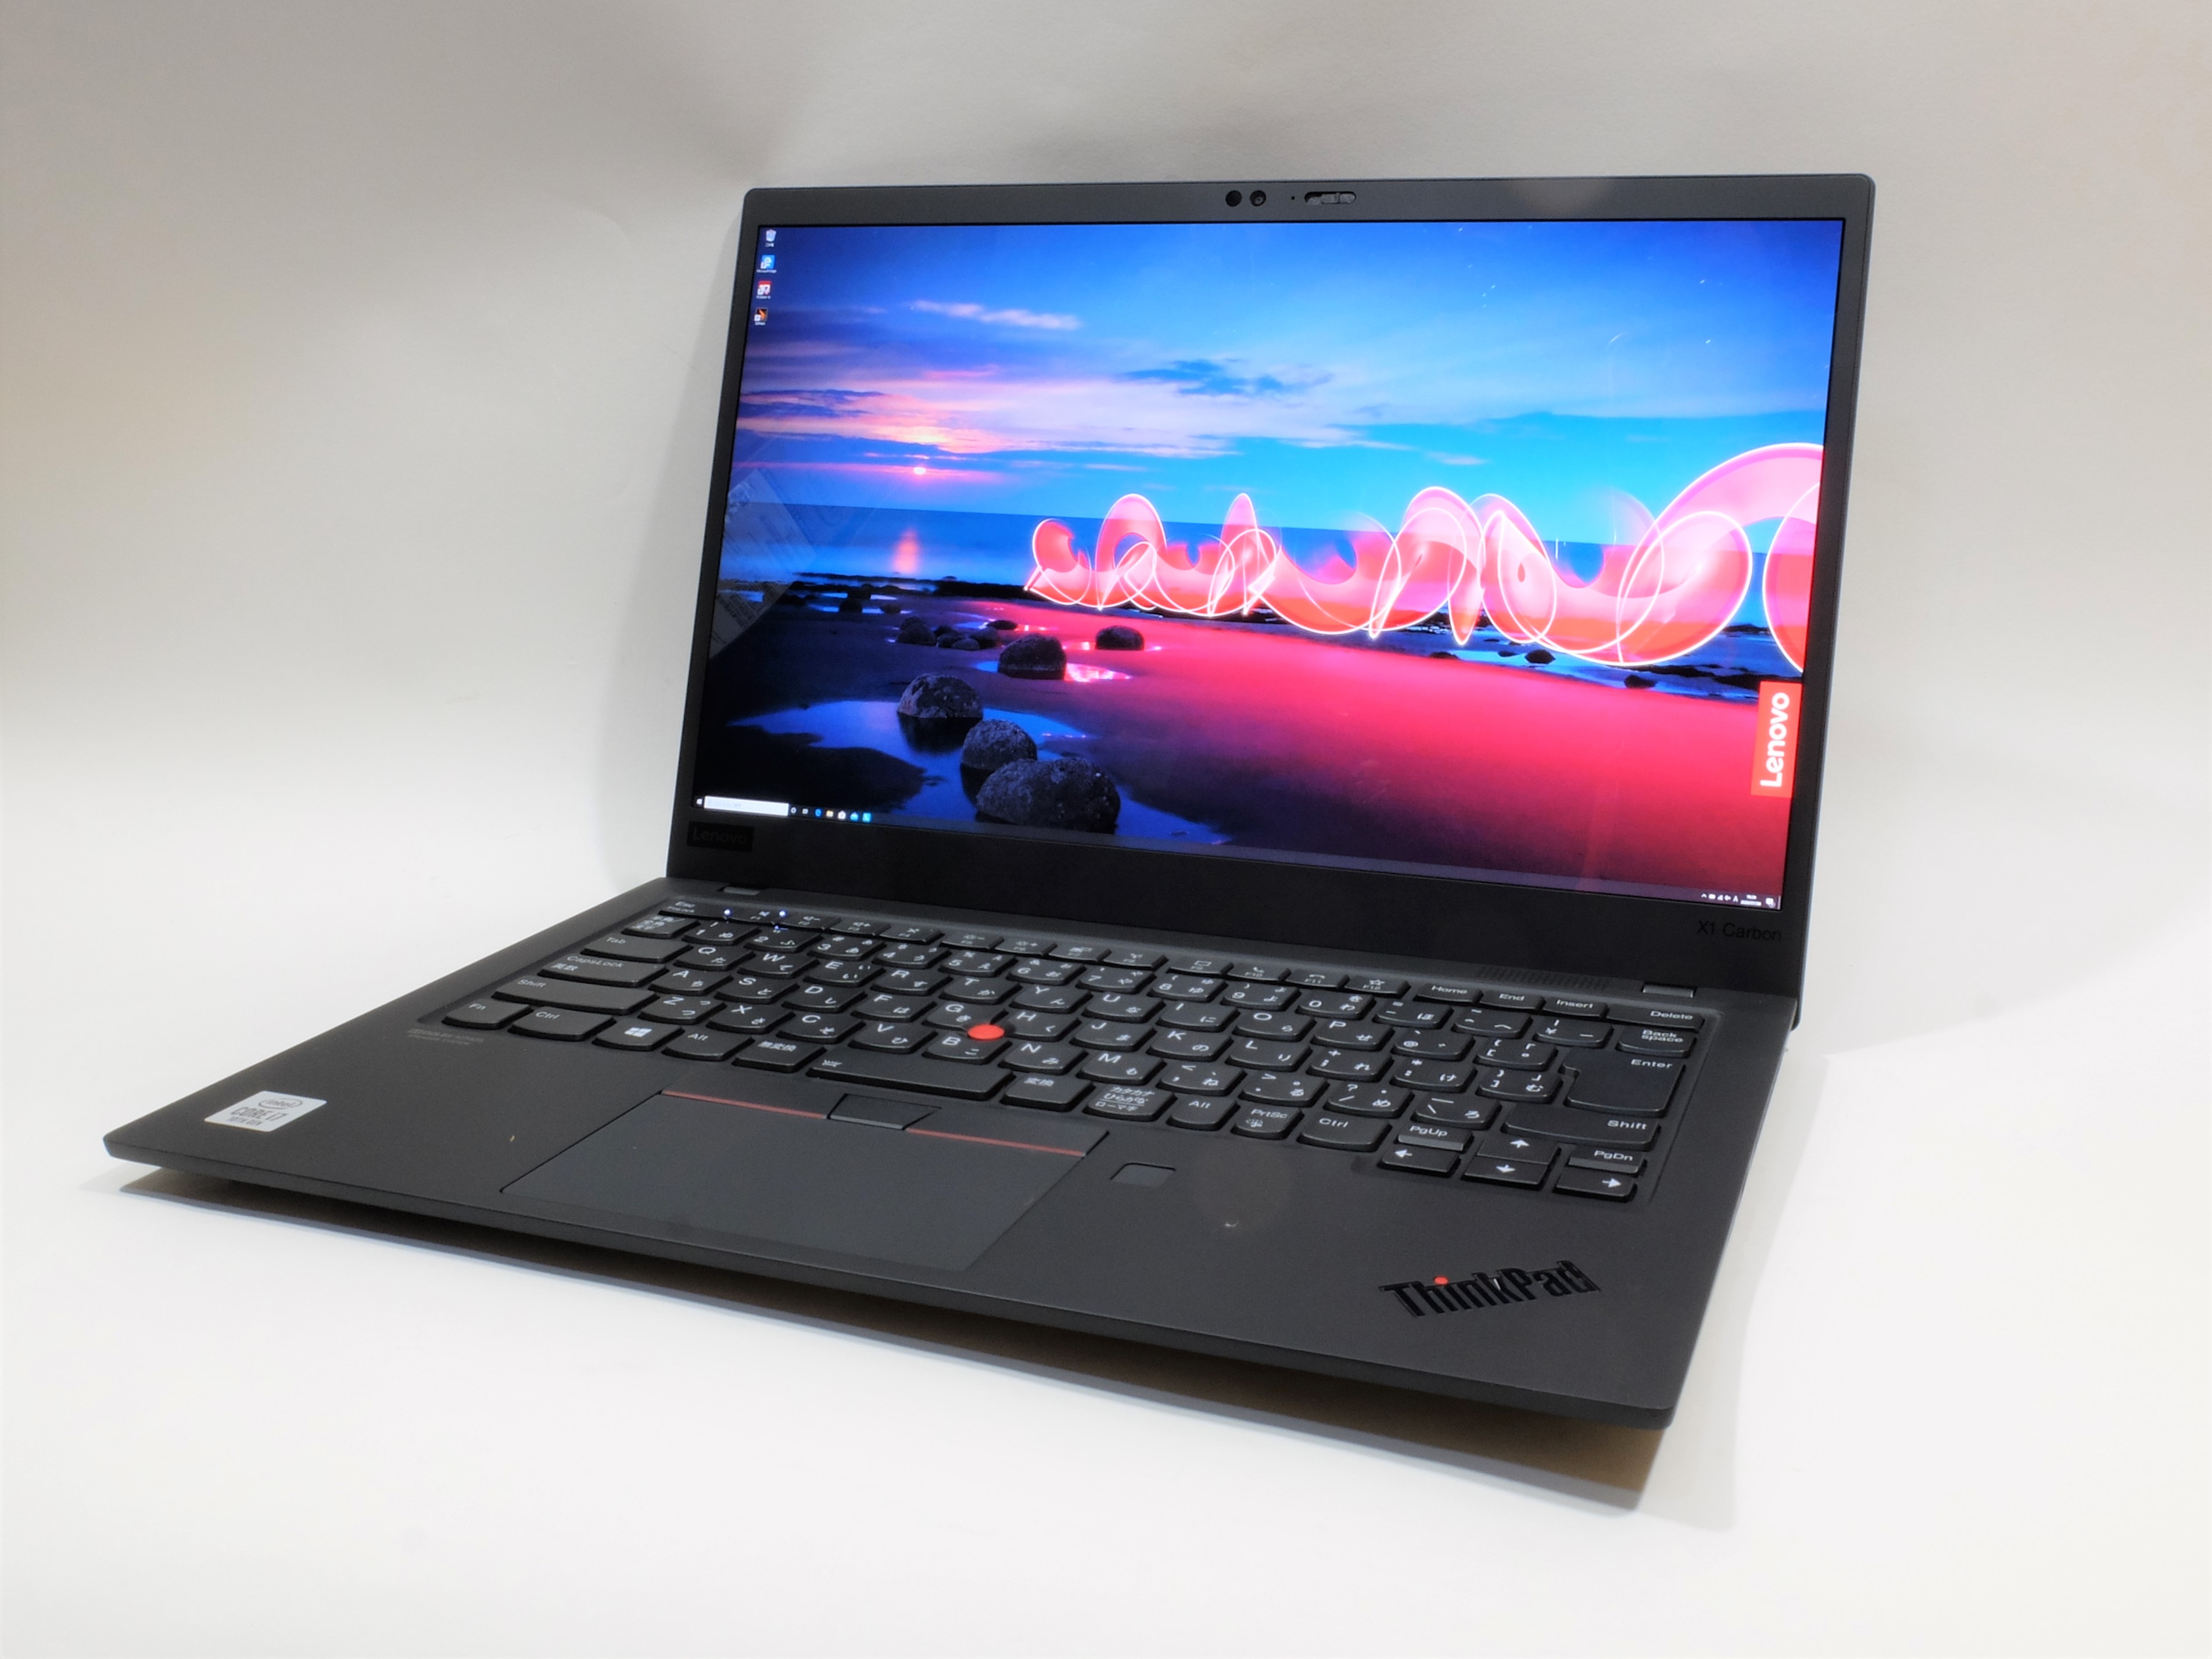 PC短評】Wi-Fi 6対応のプレミアビジネスノート「ThinkPad X1 Carbon